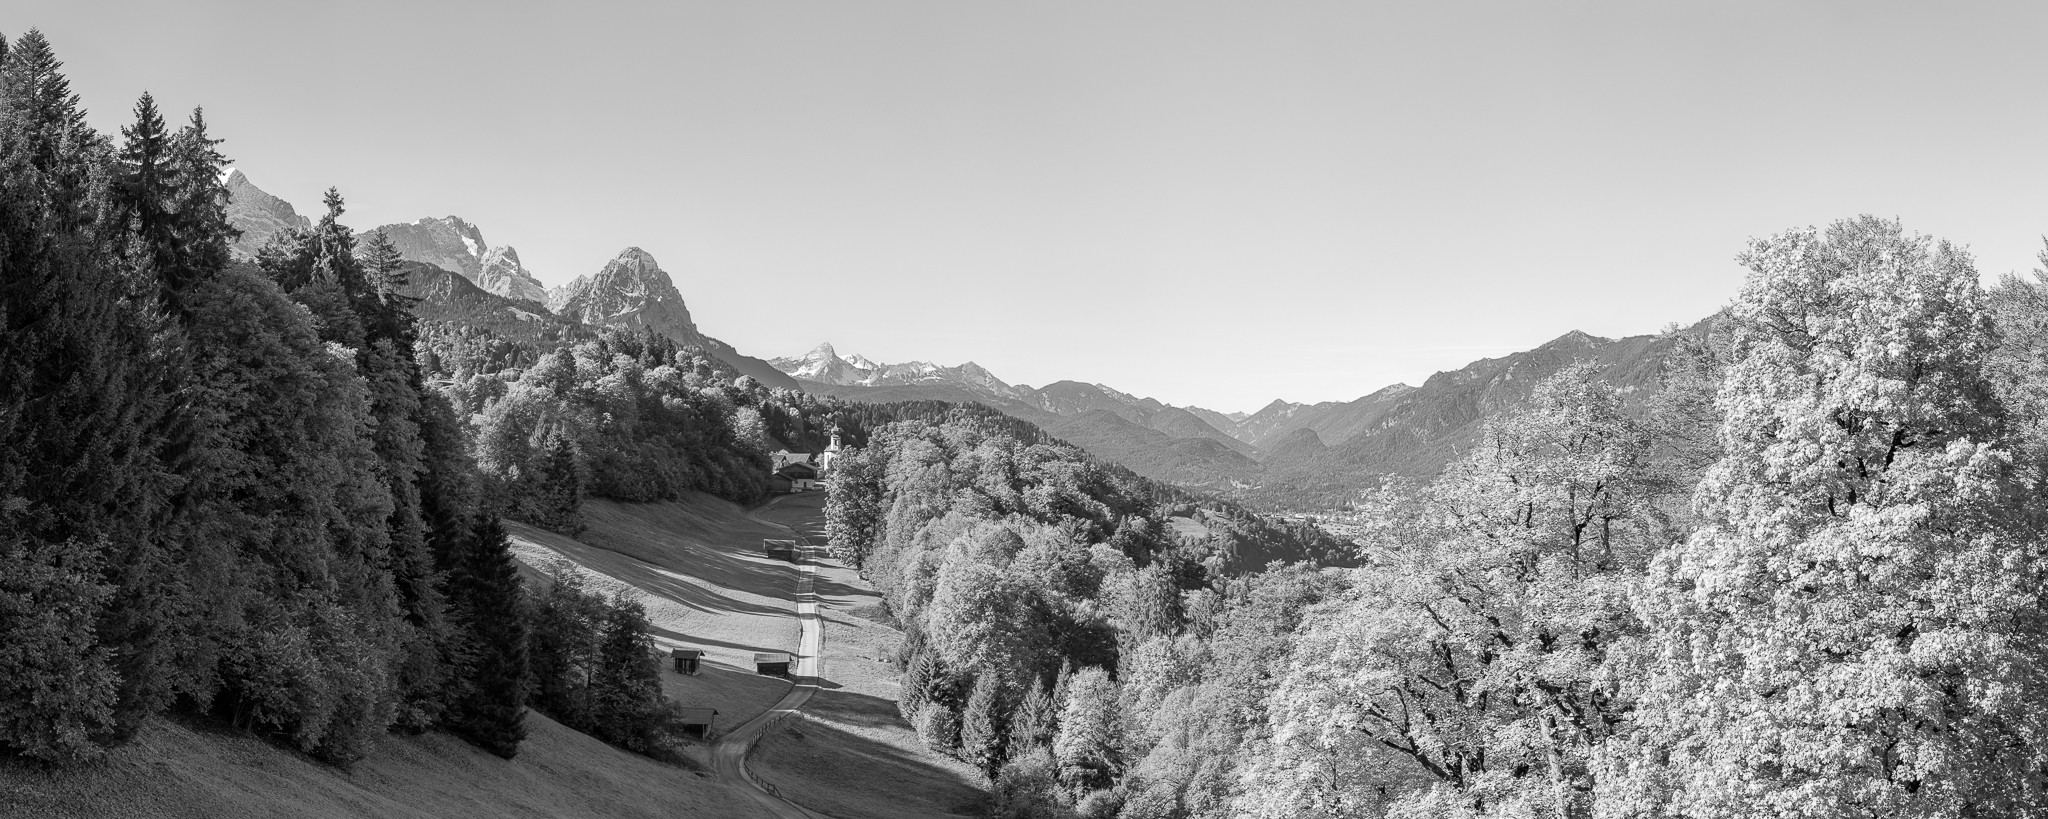 Wamberg mit Blick auf die Kirche St. Anna. Berge: Alpspitze, Zugspitze, Waxenstein und Daniel.in schwarz weiß.